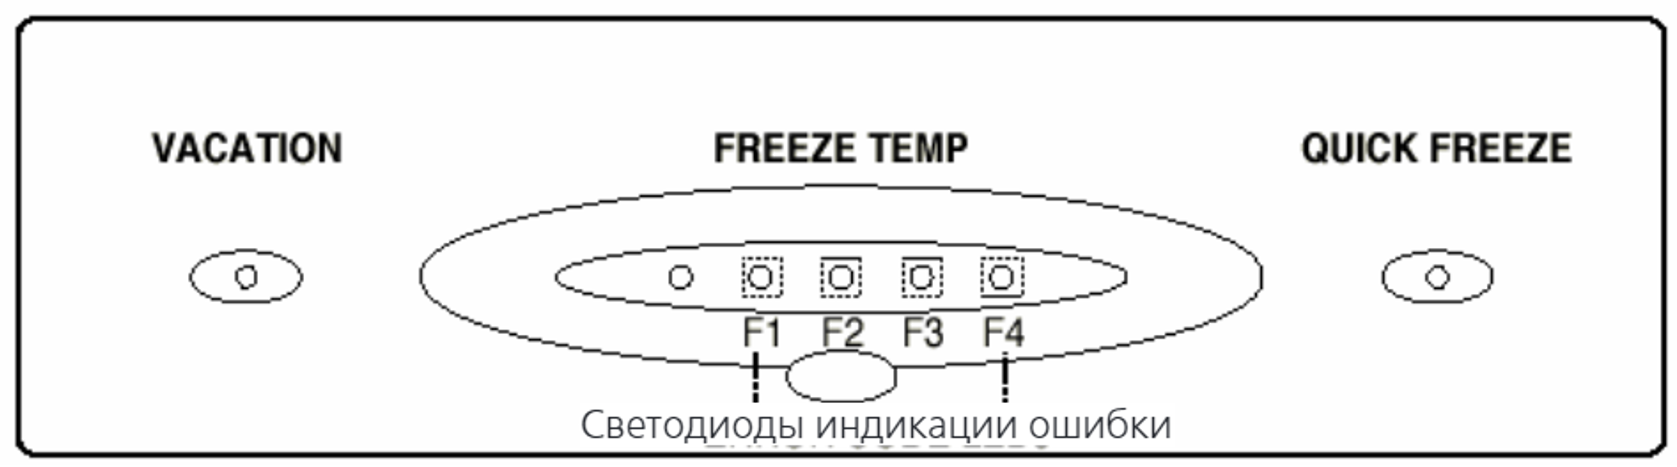 Песня freeze перевод. Холодильник LG gr 389sqf кнопка quick Freeze. Vacation и quick Freeze на холодильнике. Quick Freeze на холодильнике LG. Холодильник LG индикаторы управления.